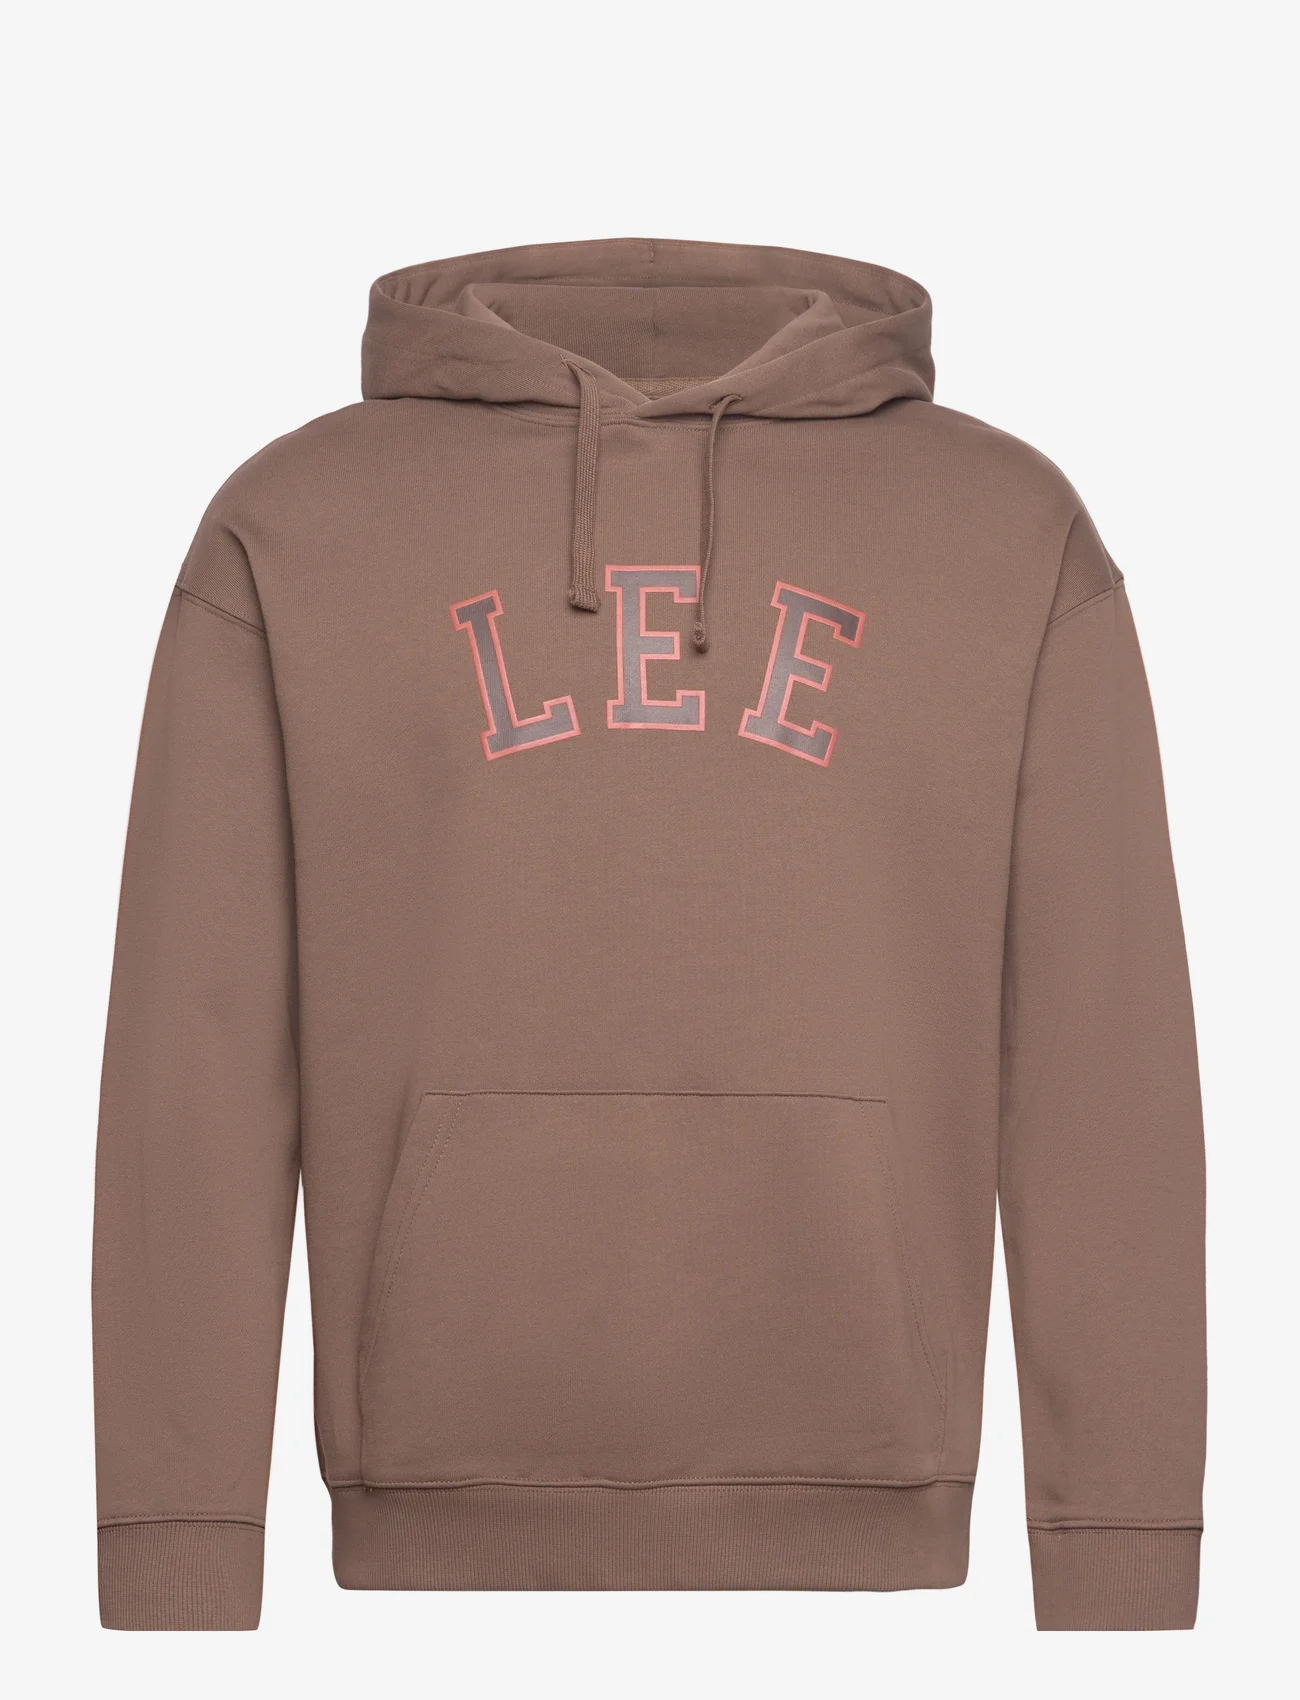 Lee Jeans - GRAPHIC HOODIE - hoodies - truffle - 0